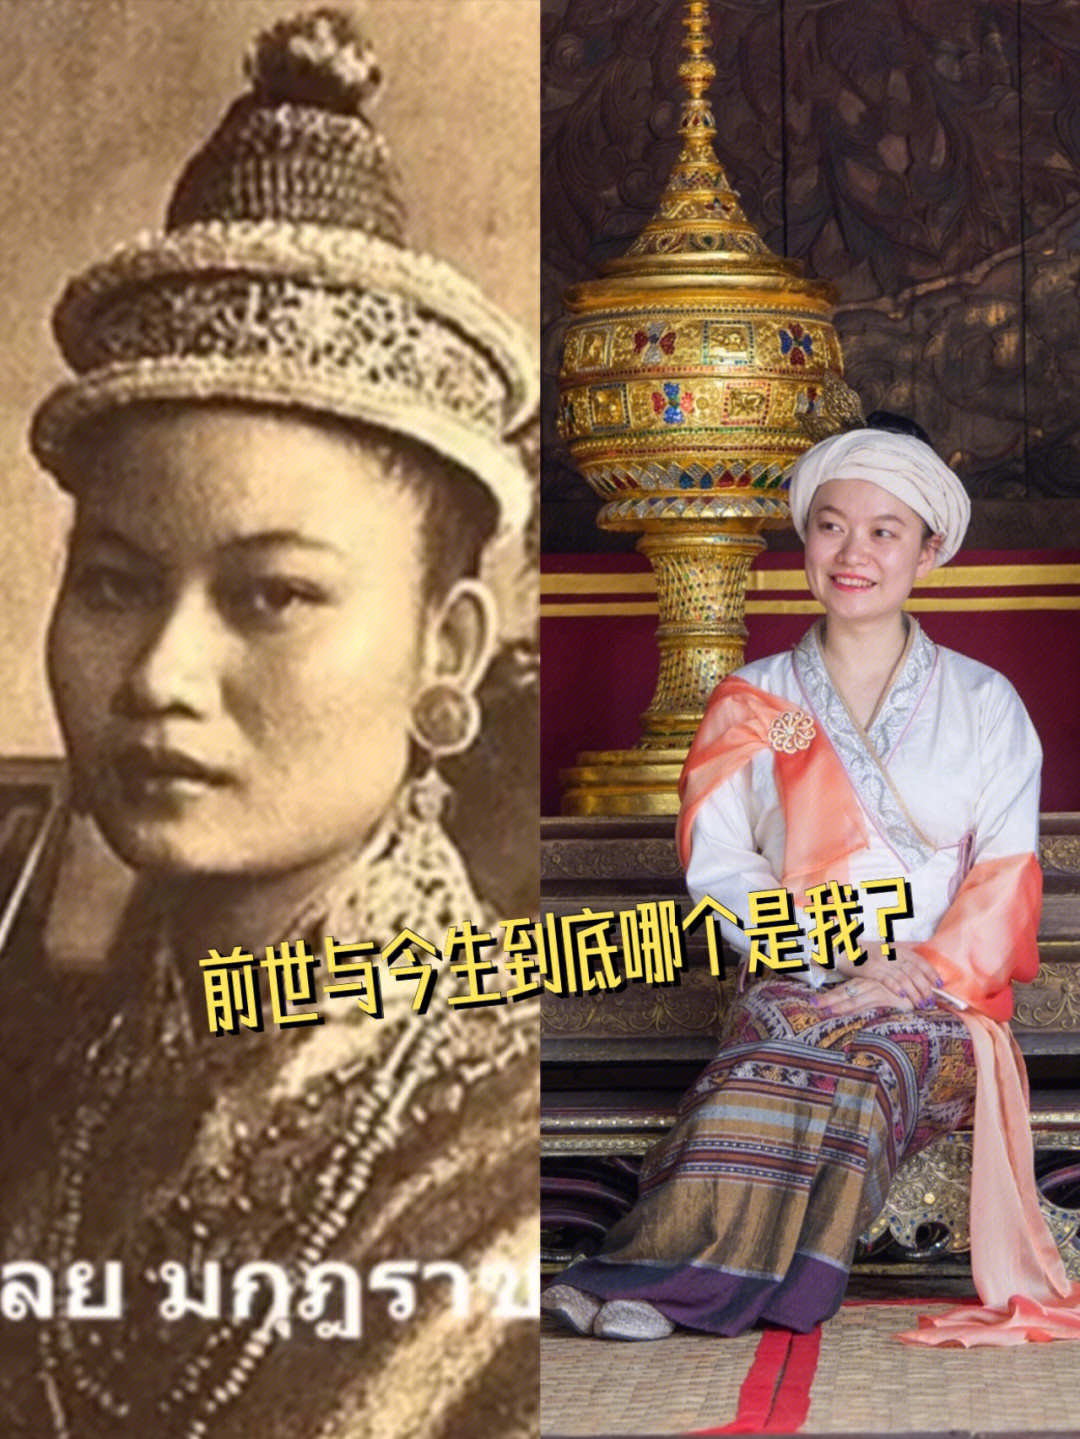 缅甸王朝末代皇后图片